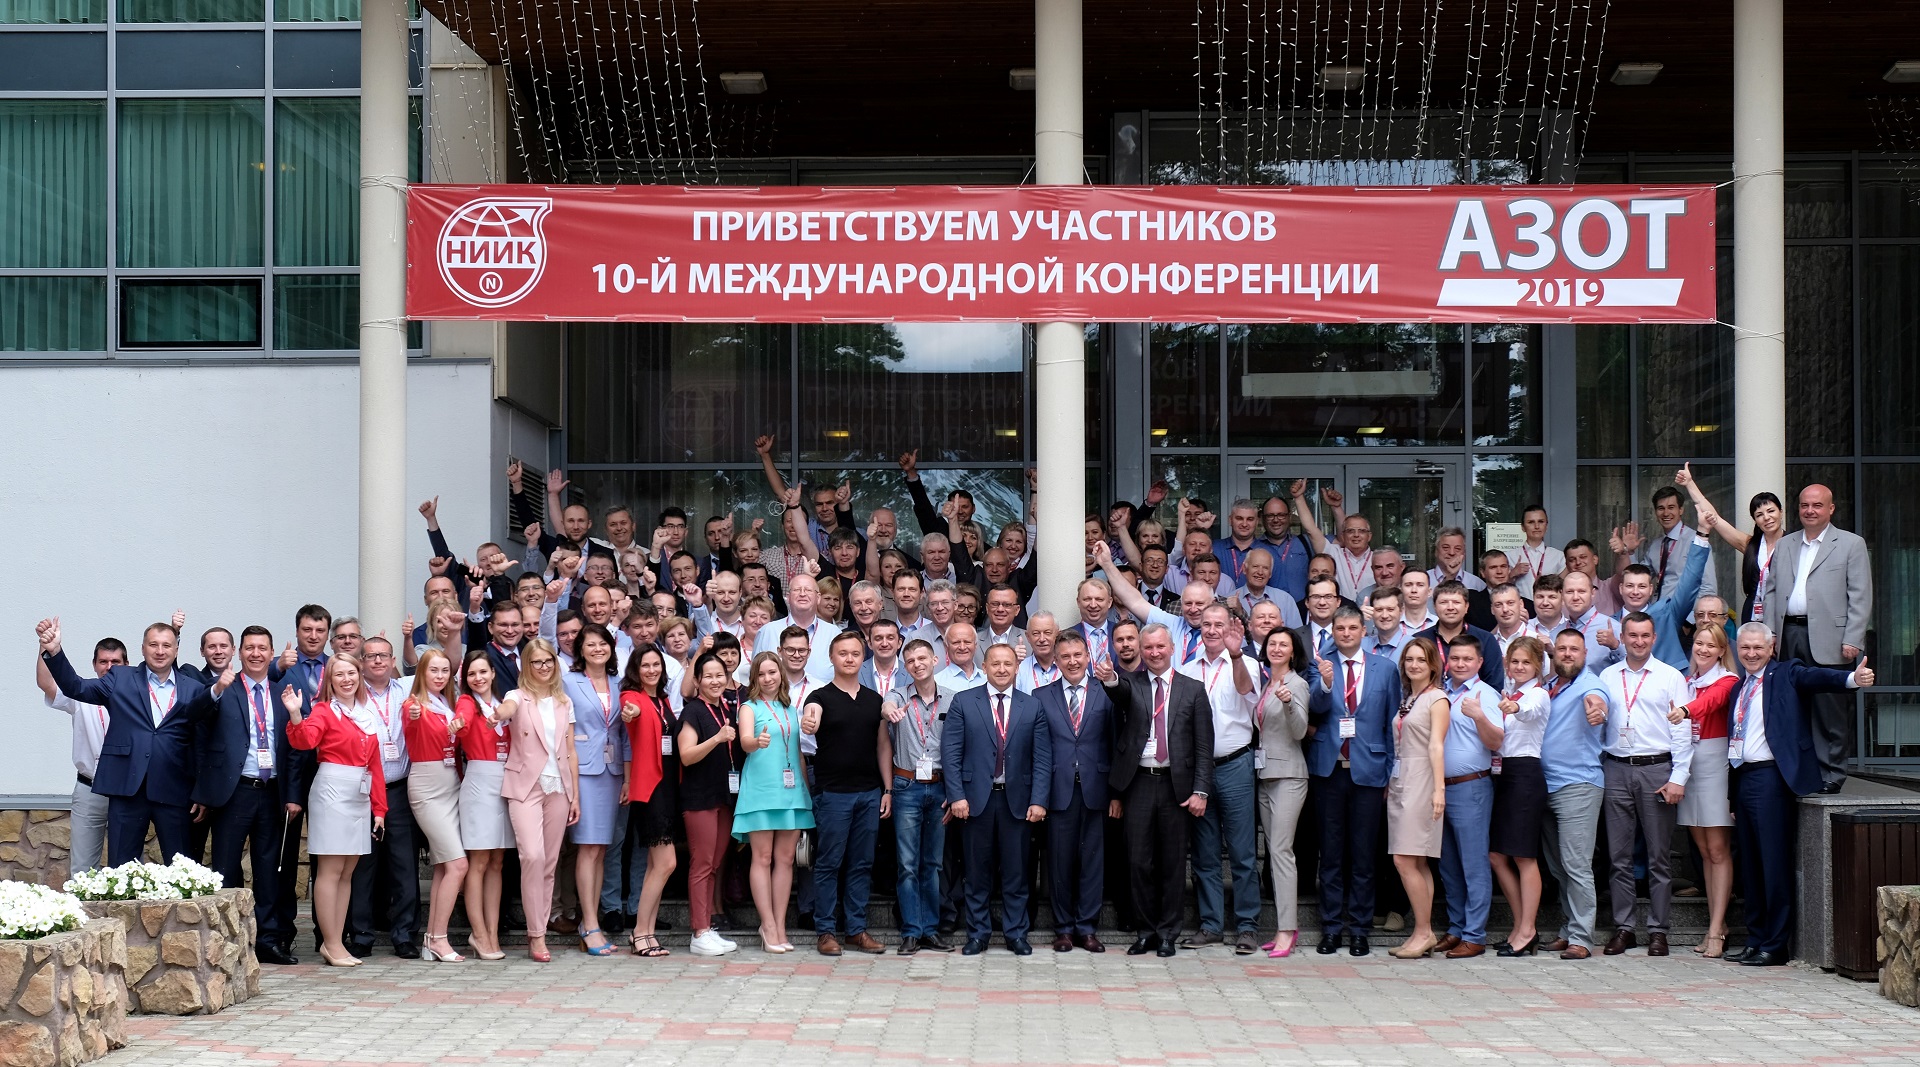 НИИК представил заказчикам свои новые разработки и технологии на Международной научно-практической конференции «Азот-2019»